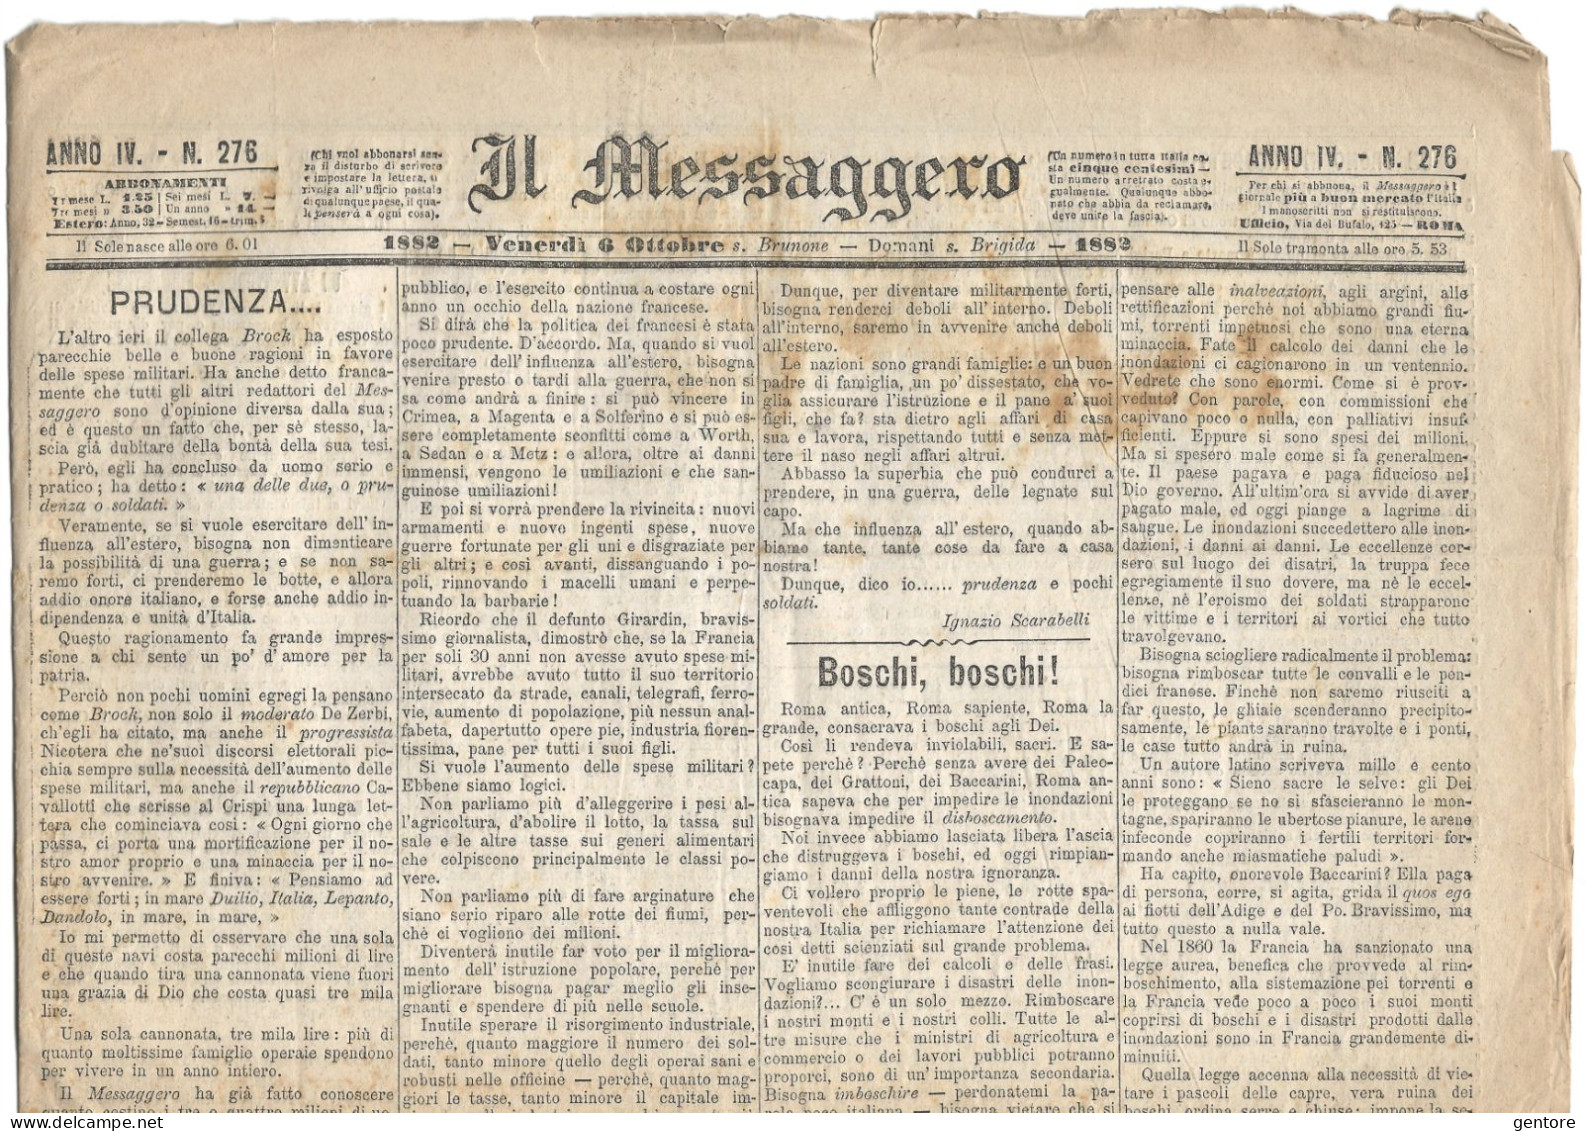 IL MESSAGGERO ANNO IV 11 numeri dal 25 Settembre al 9 Ottobre 1882 ORIGINALI in BUONE CONDIZIONI